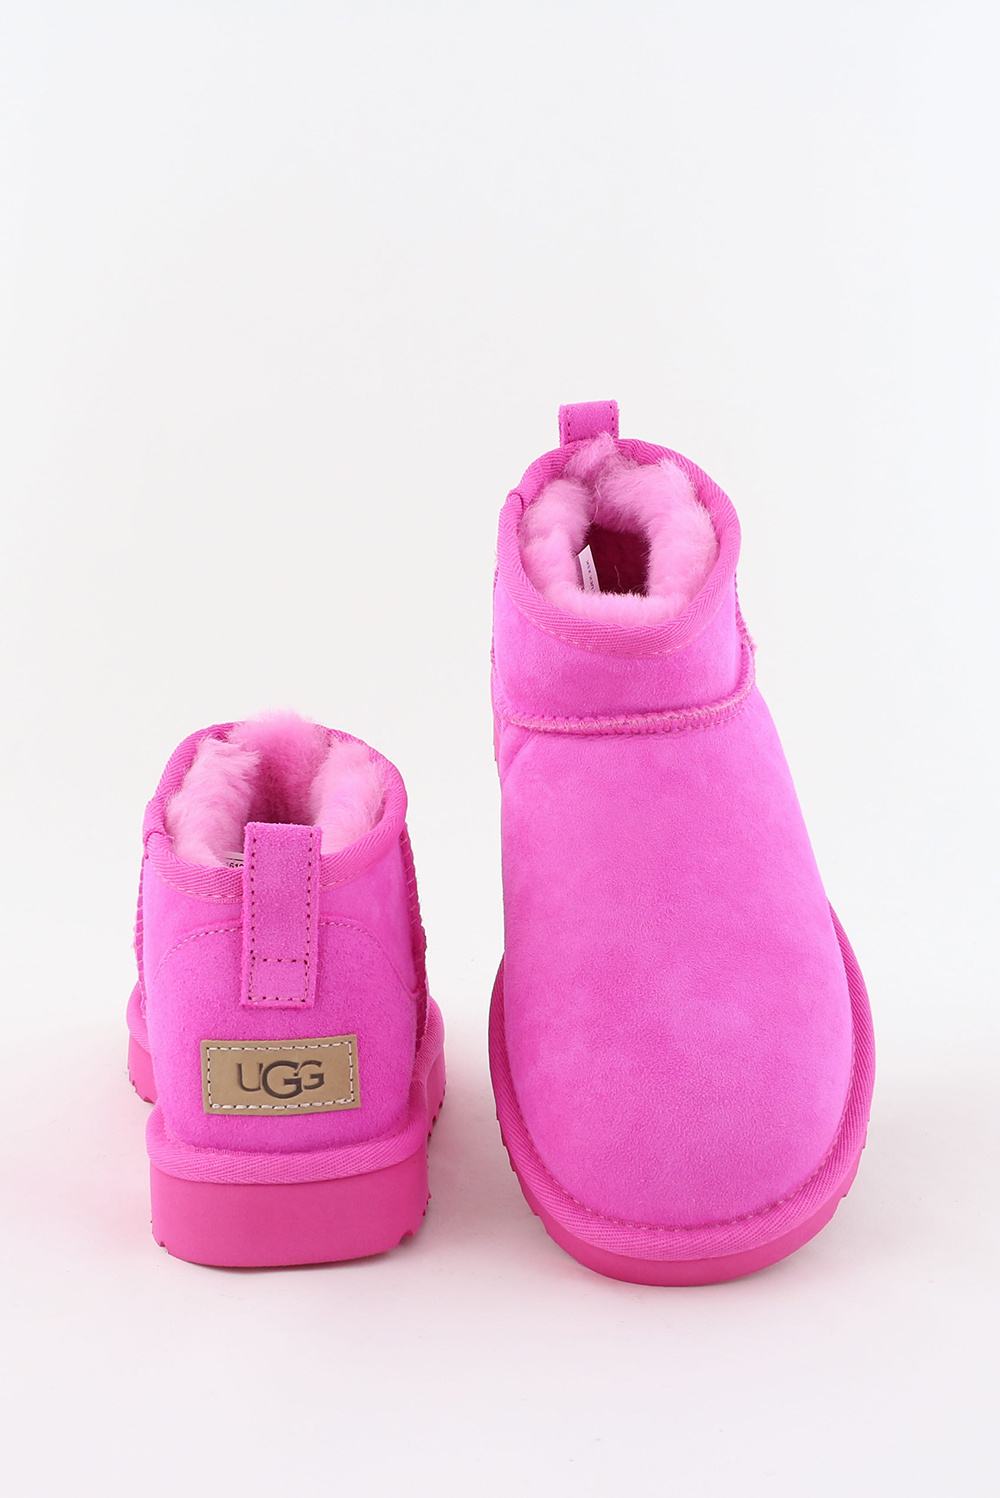 Vrijlating Ga wandelen Literaire kunsten UGG enkellaarsjes Classic Ultra Mini 1116109 roze - Marjon Snieders